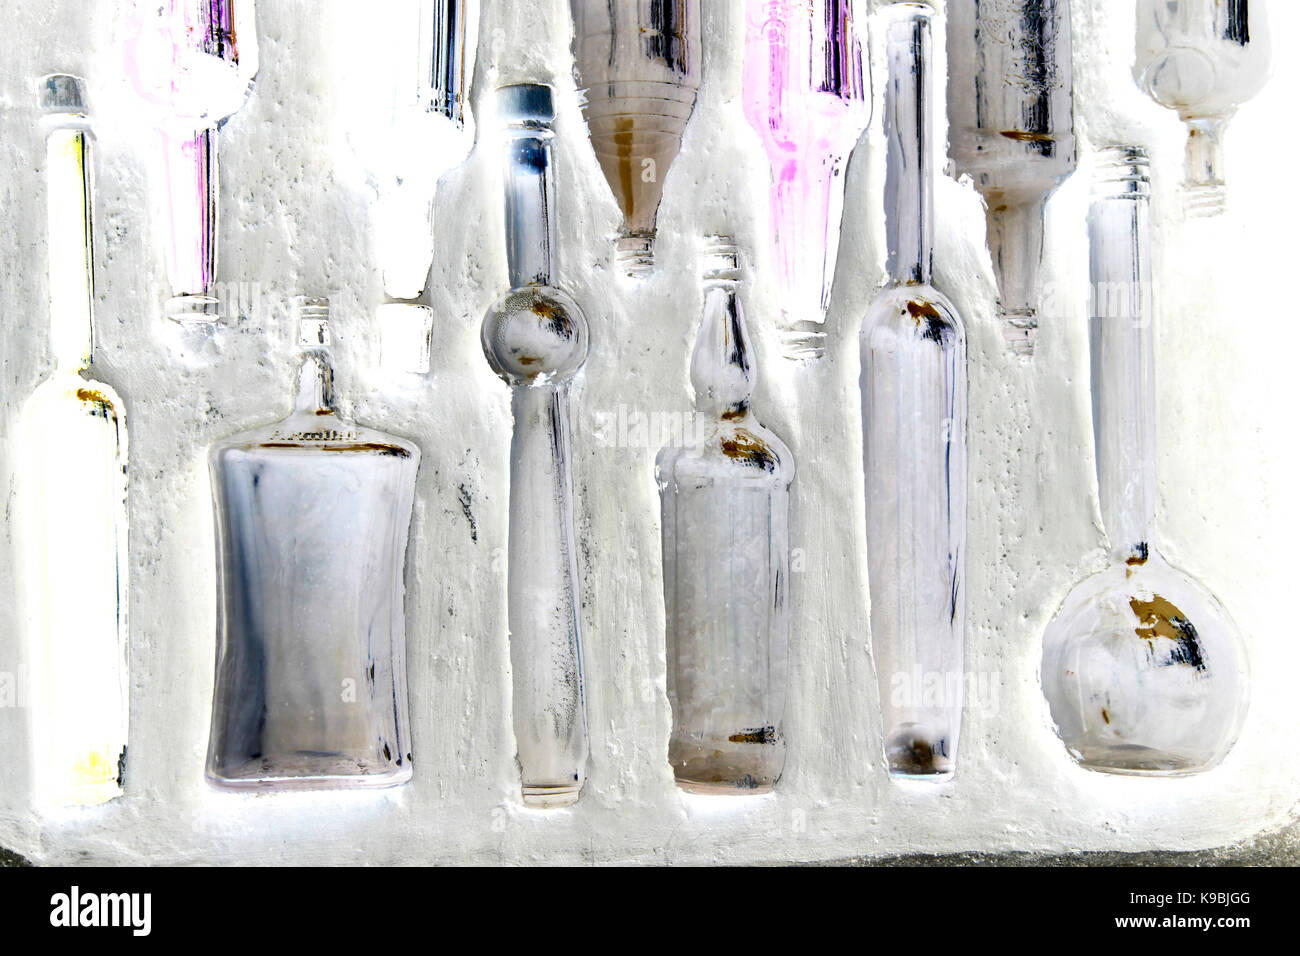 Bottiglie in una parete - bottiglie di vetro annegate in un bianco lavato la parete Foto Stock